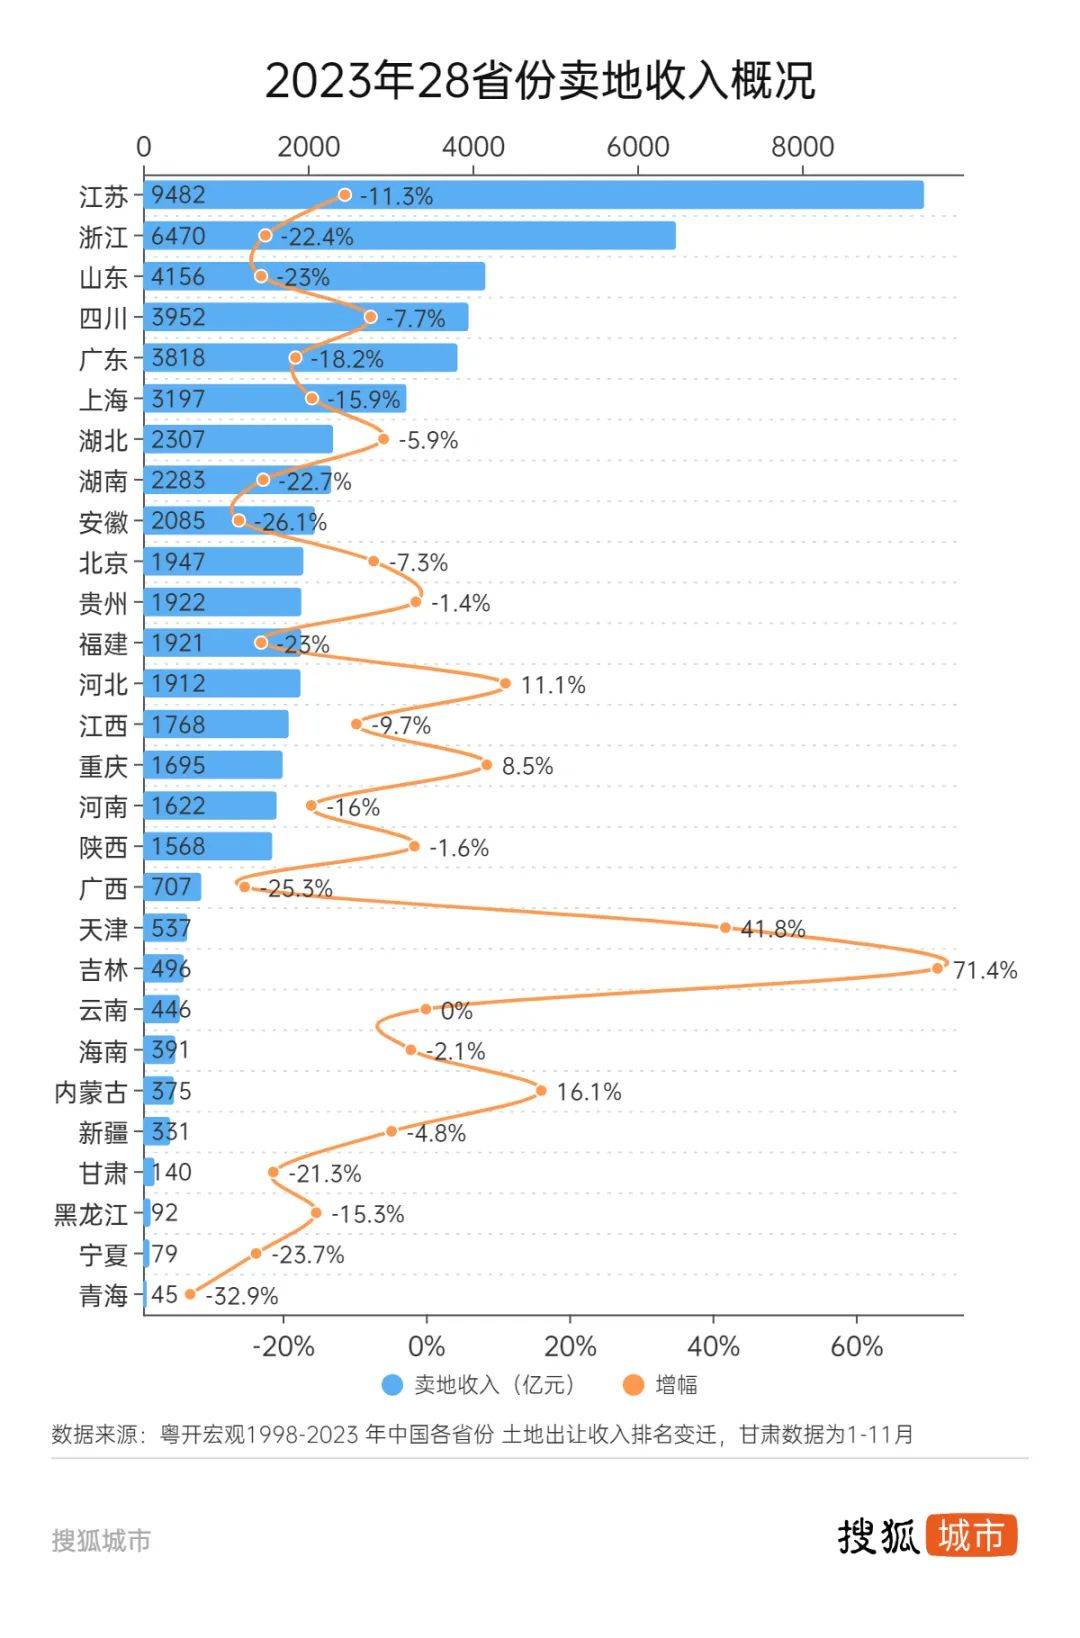 原创 十城土地财政解码：90%依赖度下降，杭州速滑40个百分点 行业新闻 第1张